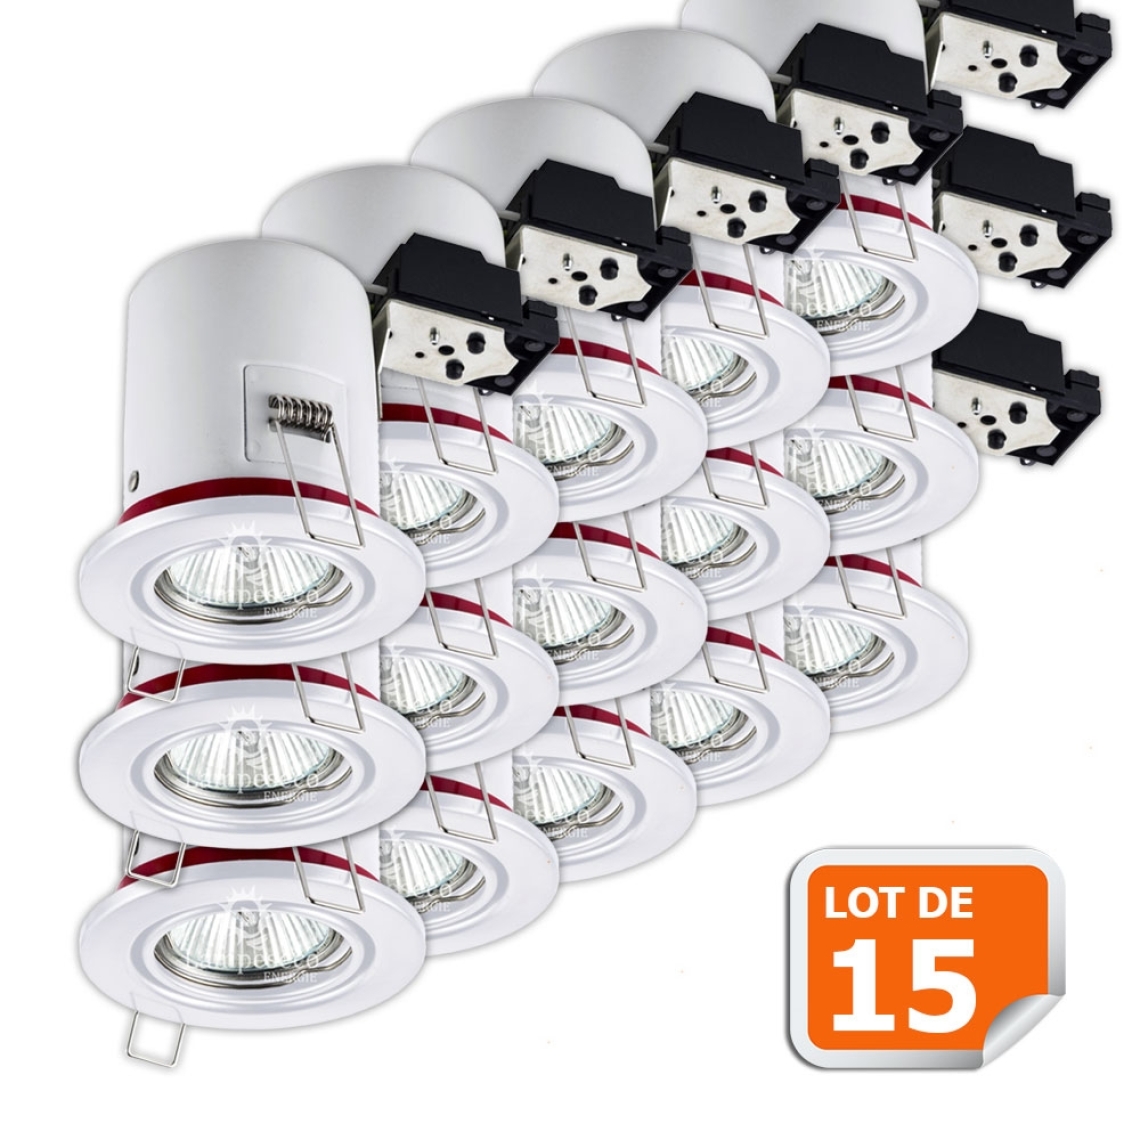 Lampesecoenergie - Lot de 15 Support de spot BBC Orientable Blanc diametre 90mm avec douille GU10 ref. 826 - Moulures et goulottes